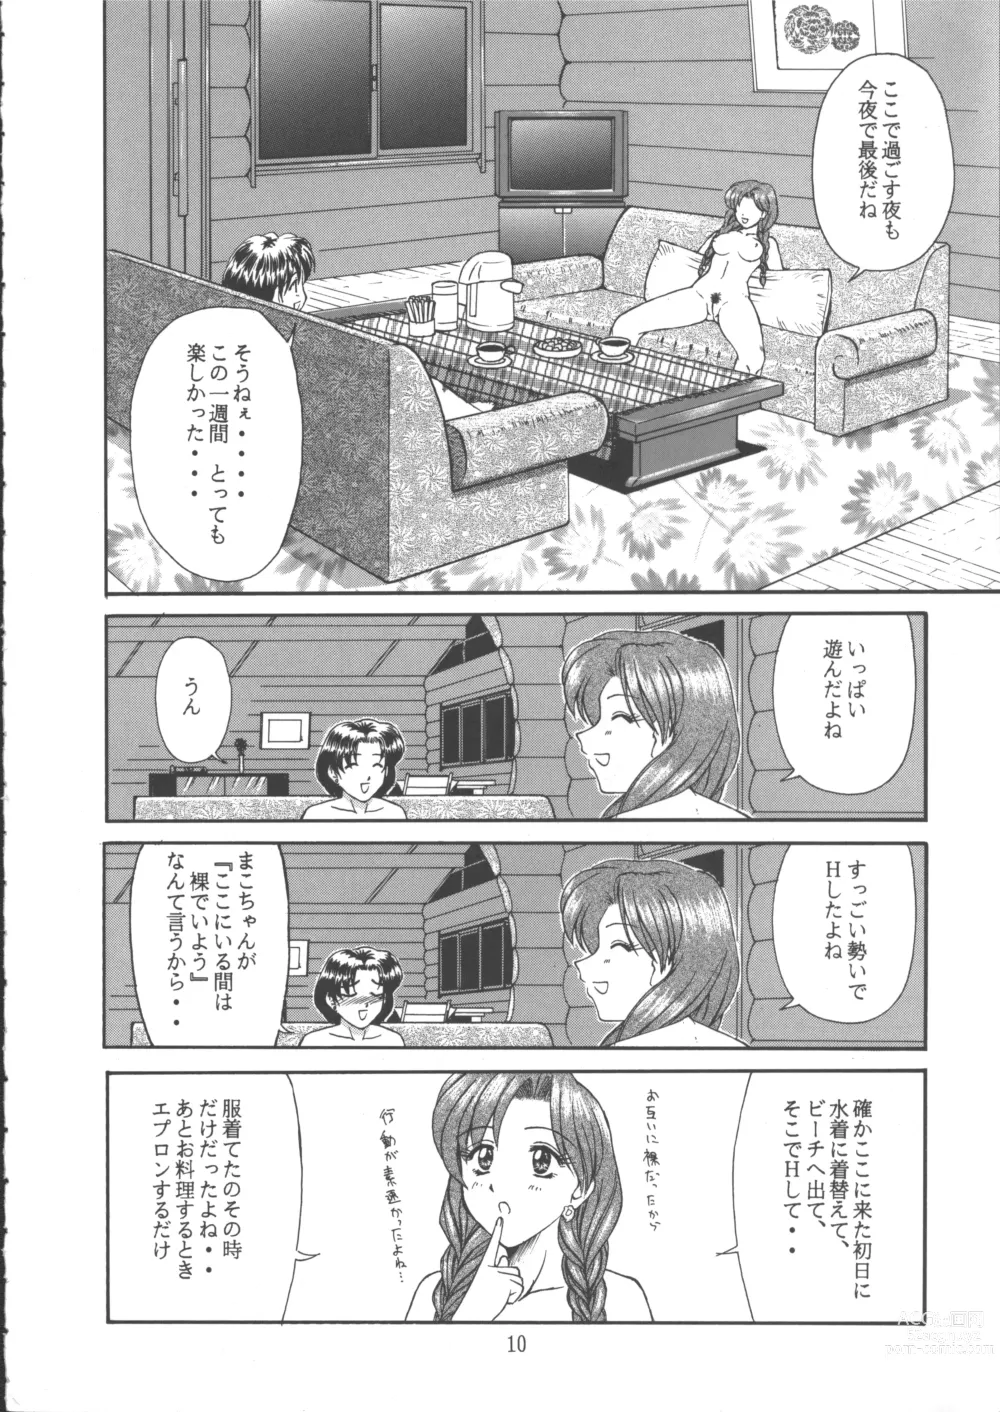 Page 9 of doujinshi PERFECT CIRCLE